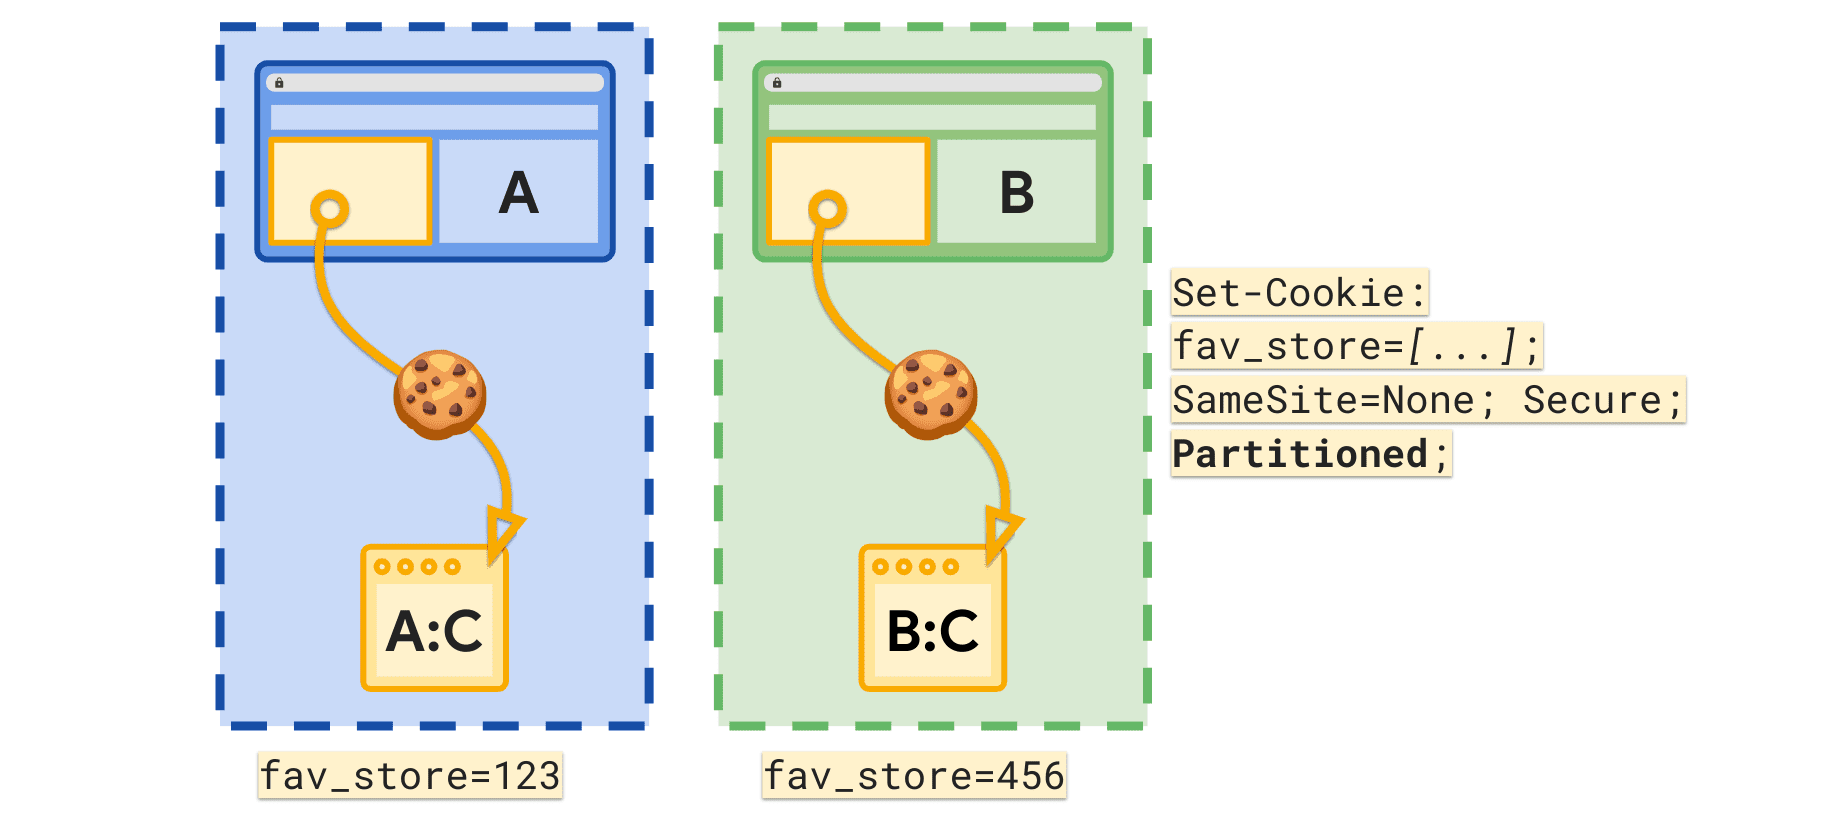 המאפיין &#39;חלוקה למחיצות&#39; מאפשר להגדיר קובץ Cookie נפרד של fav_store לכל אתר ברמה העליונה.